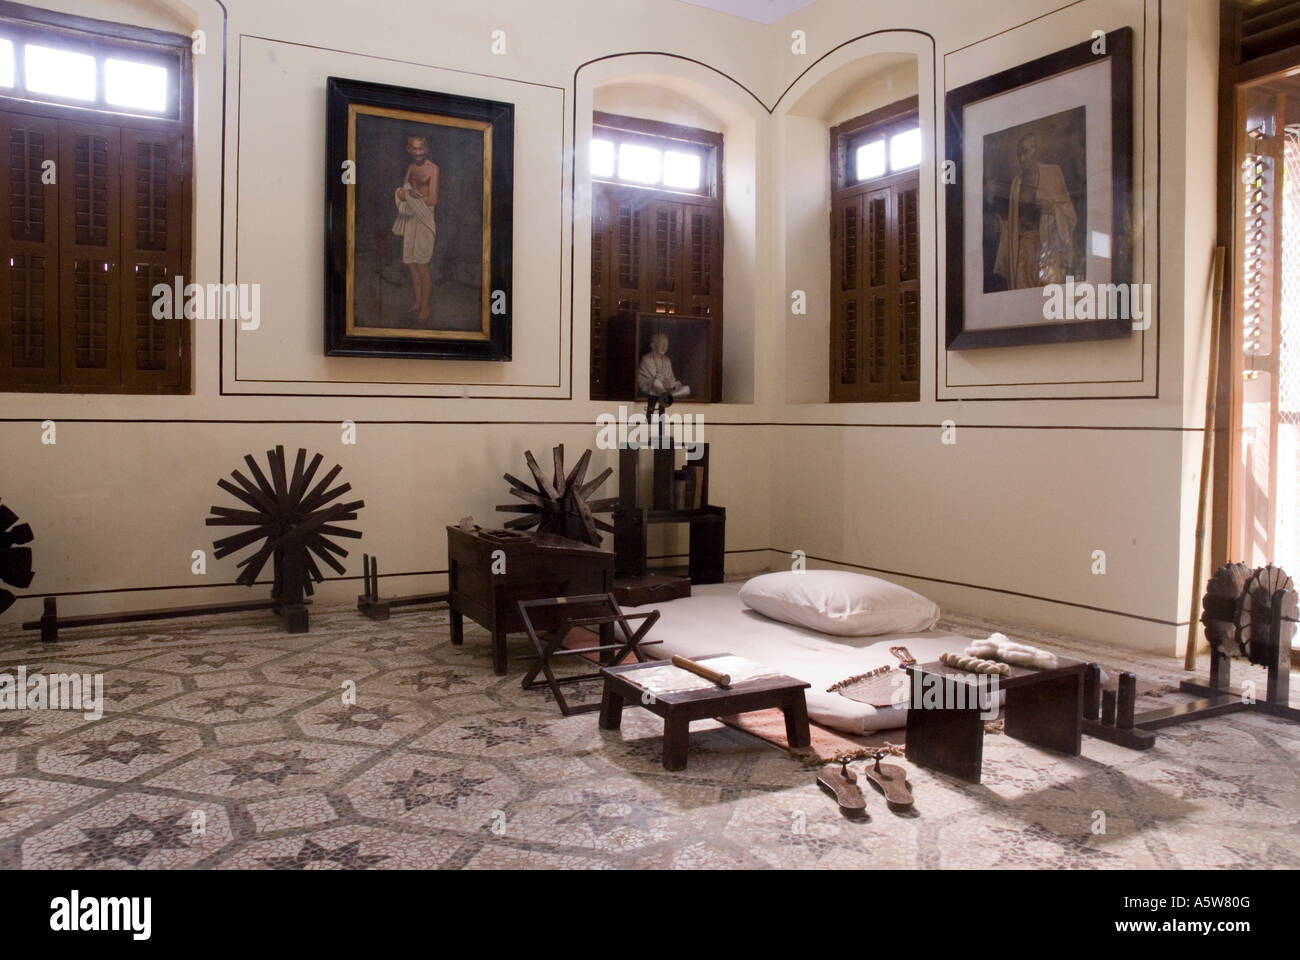 El dormitorio de Mahatma Gandhi en el interior del museo, Mumbai, India Foto de stock